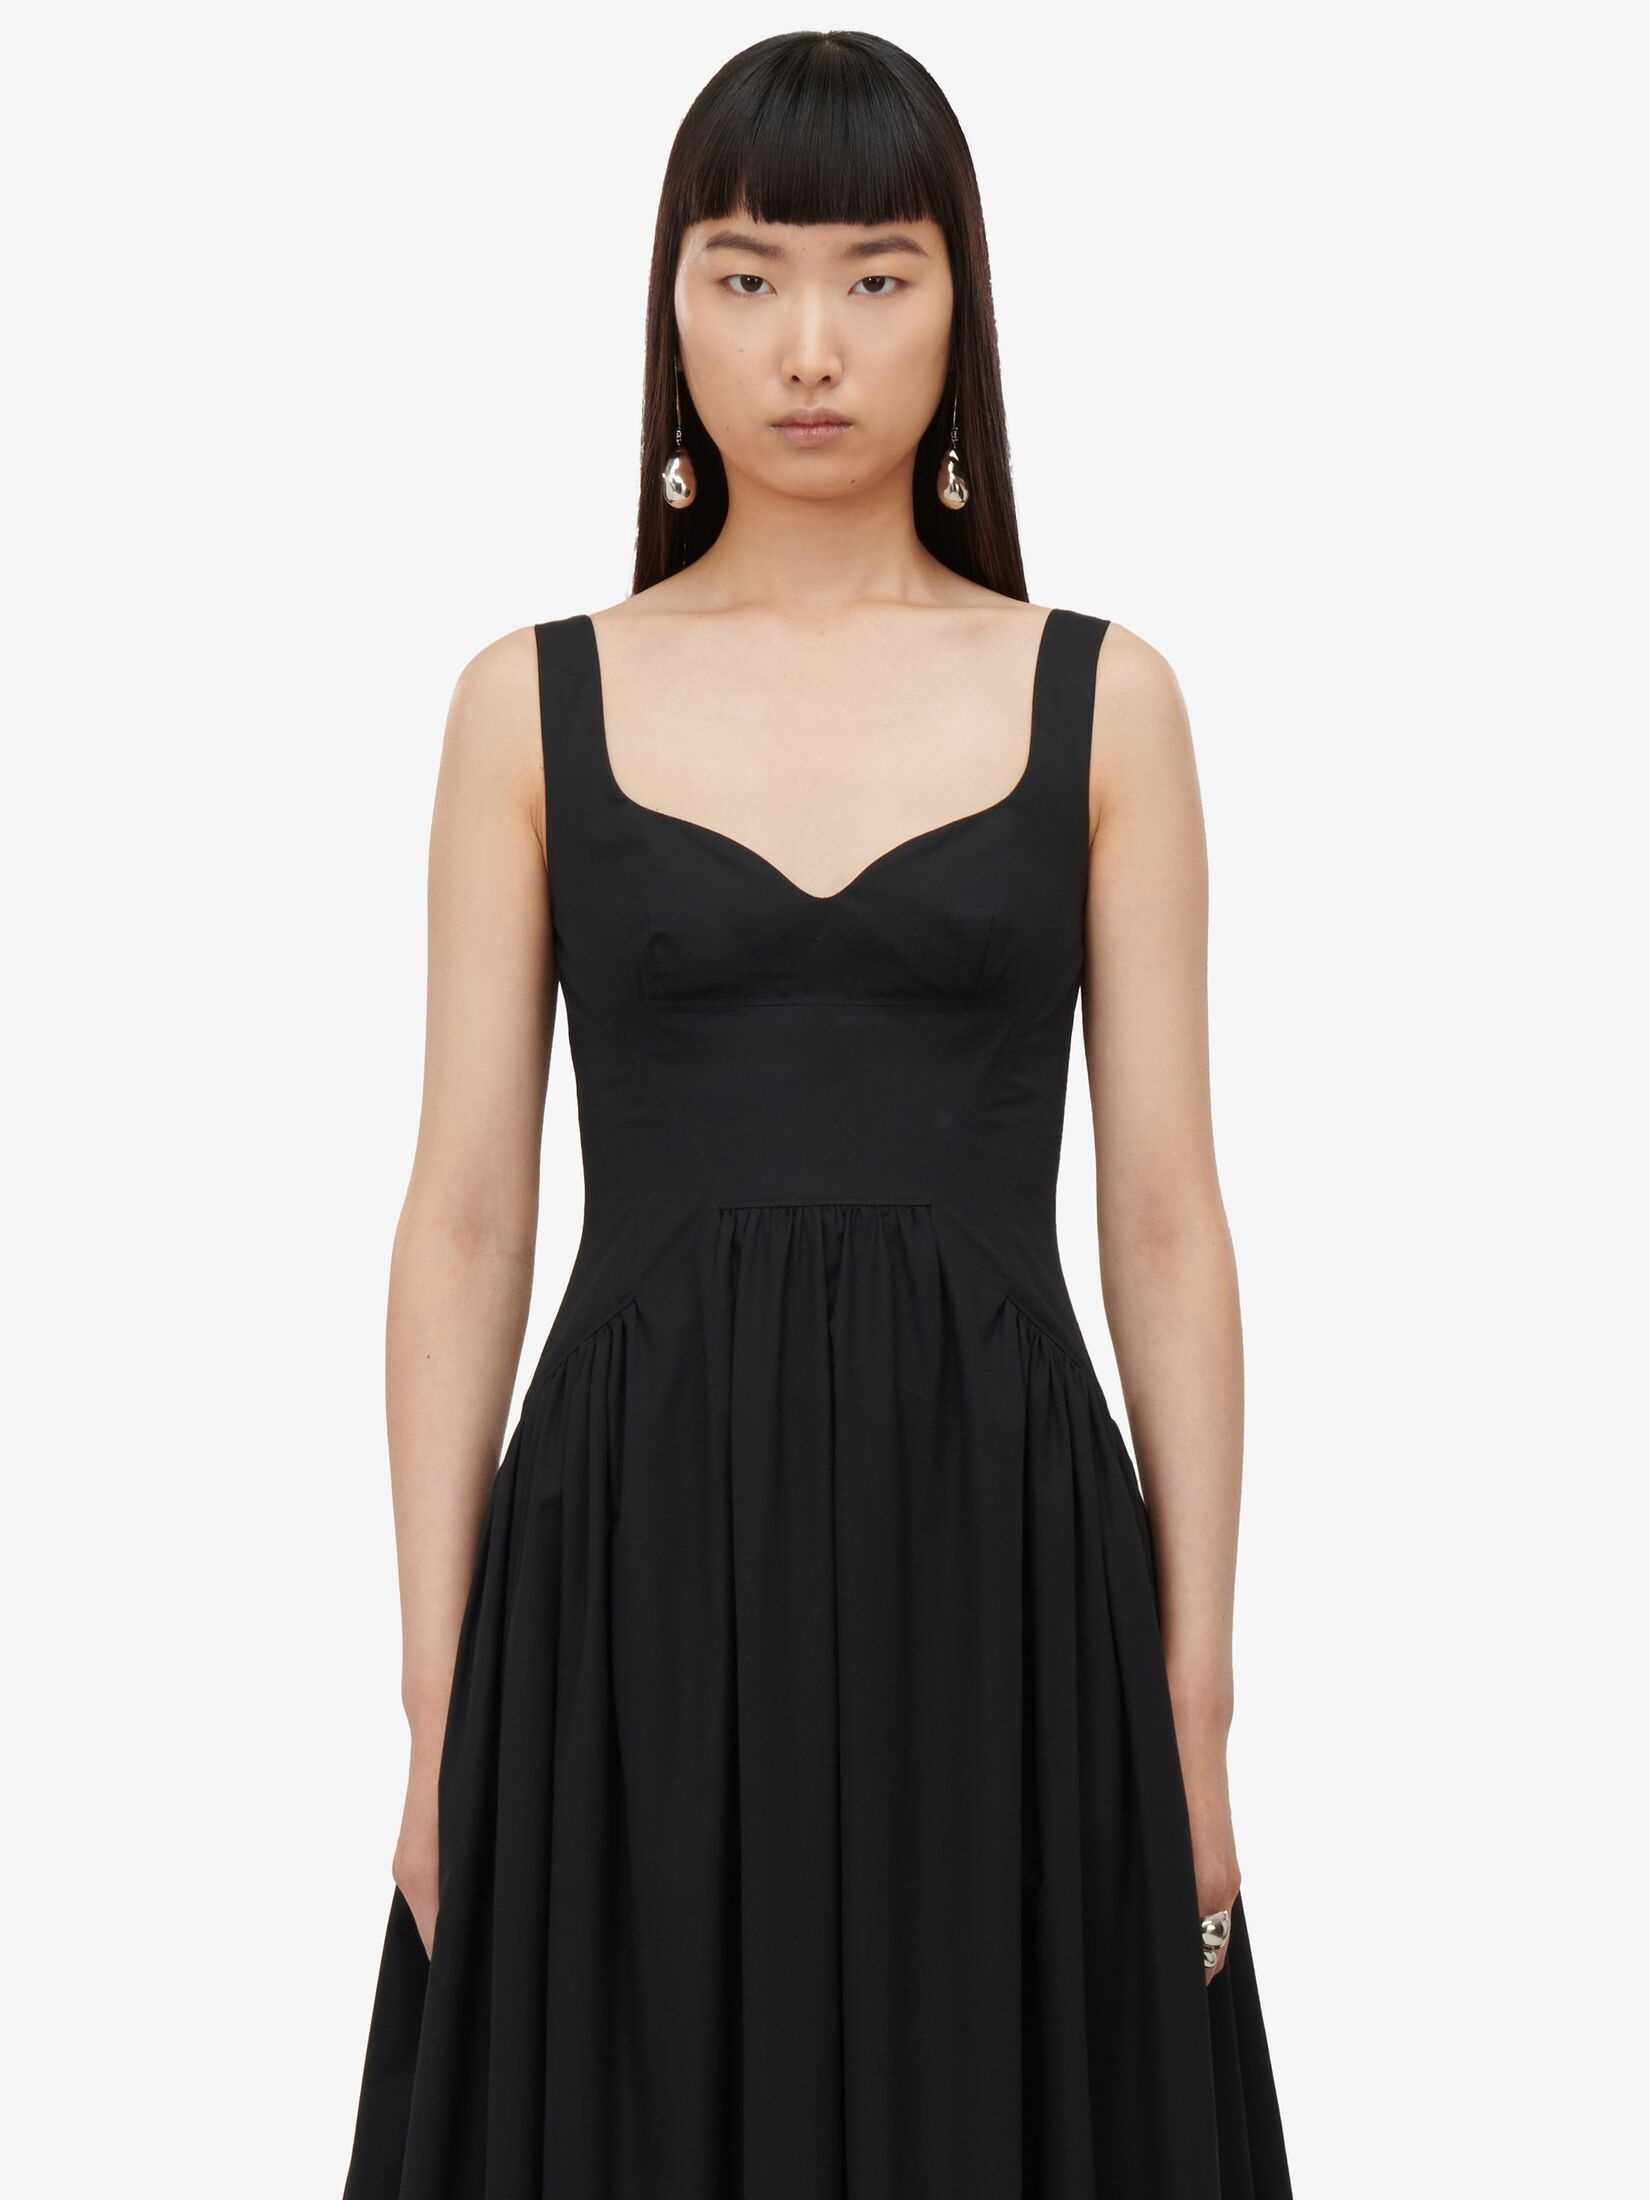 Women's Sweetheart Neckline Midi Dress in Black - 5